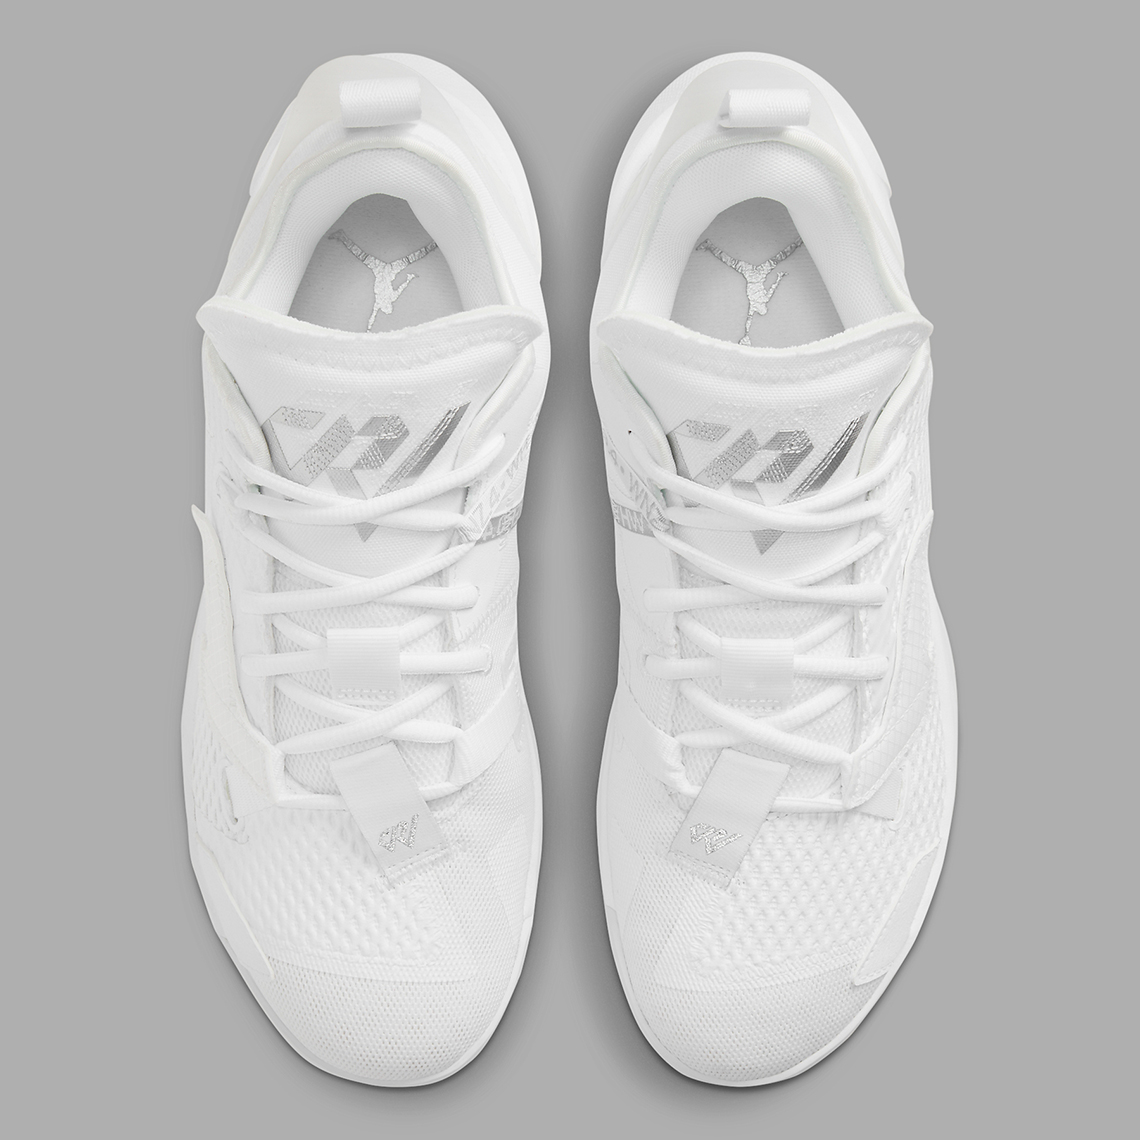 Jordan Why Not Zer0.4 Triple White CQ4230-101 | SneakerNews.com